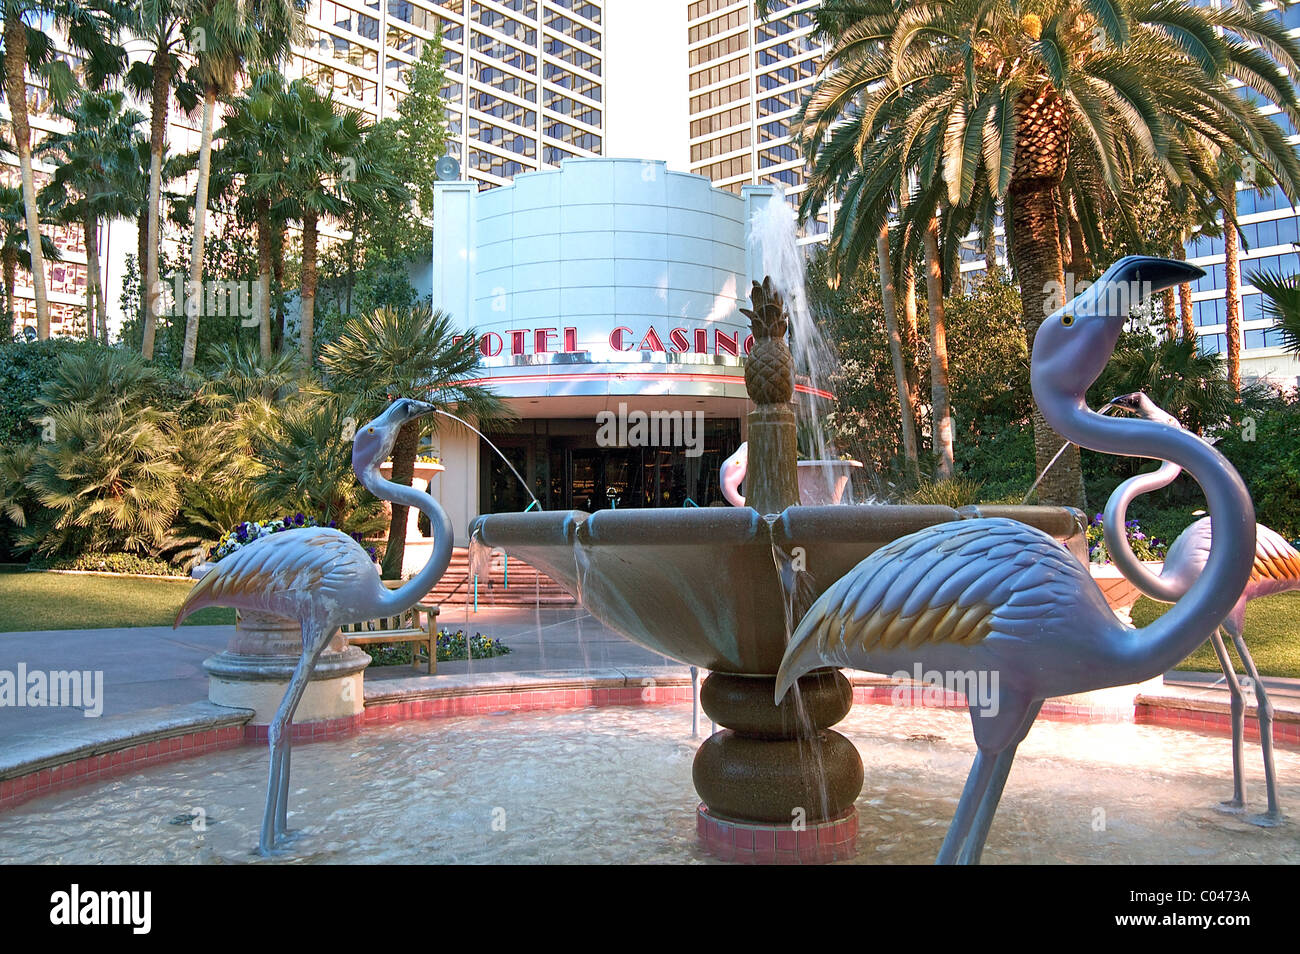 Flamingo figure in una fontana presso la Flamingo Las Vegas Hotel e Casino Foto Stock